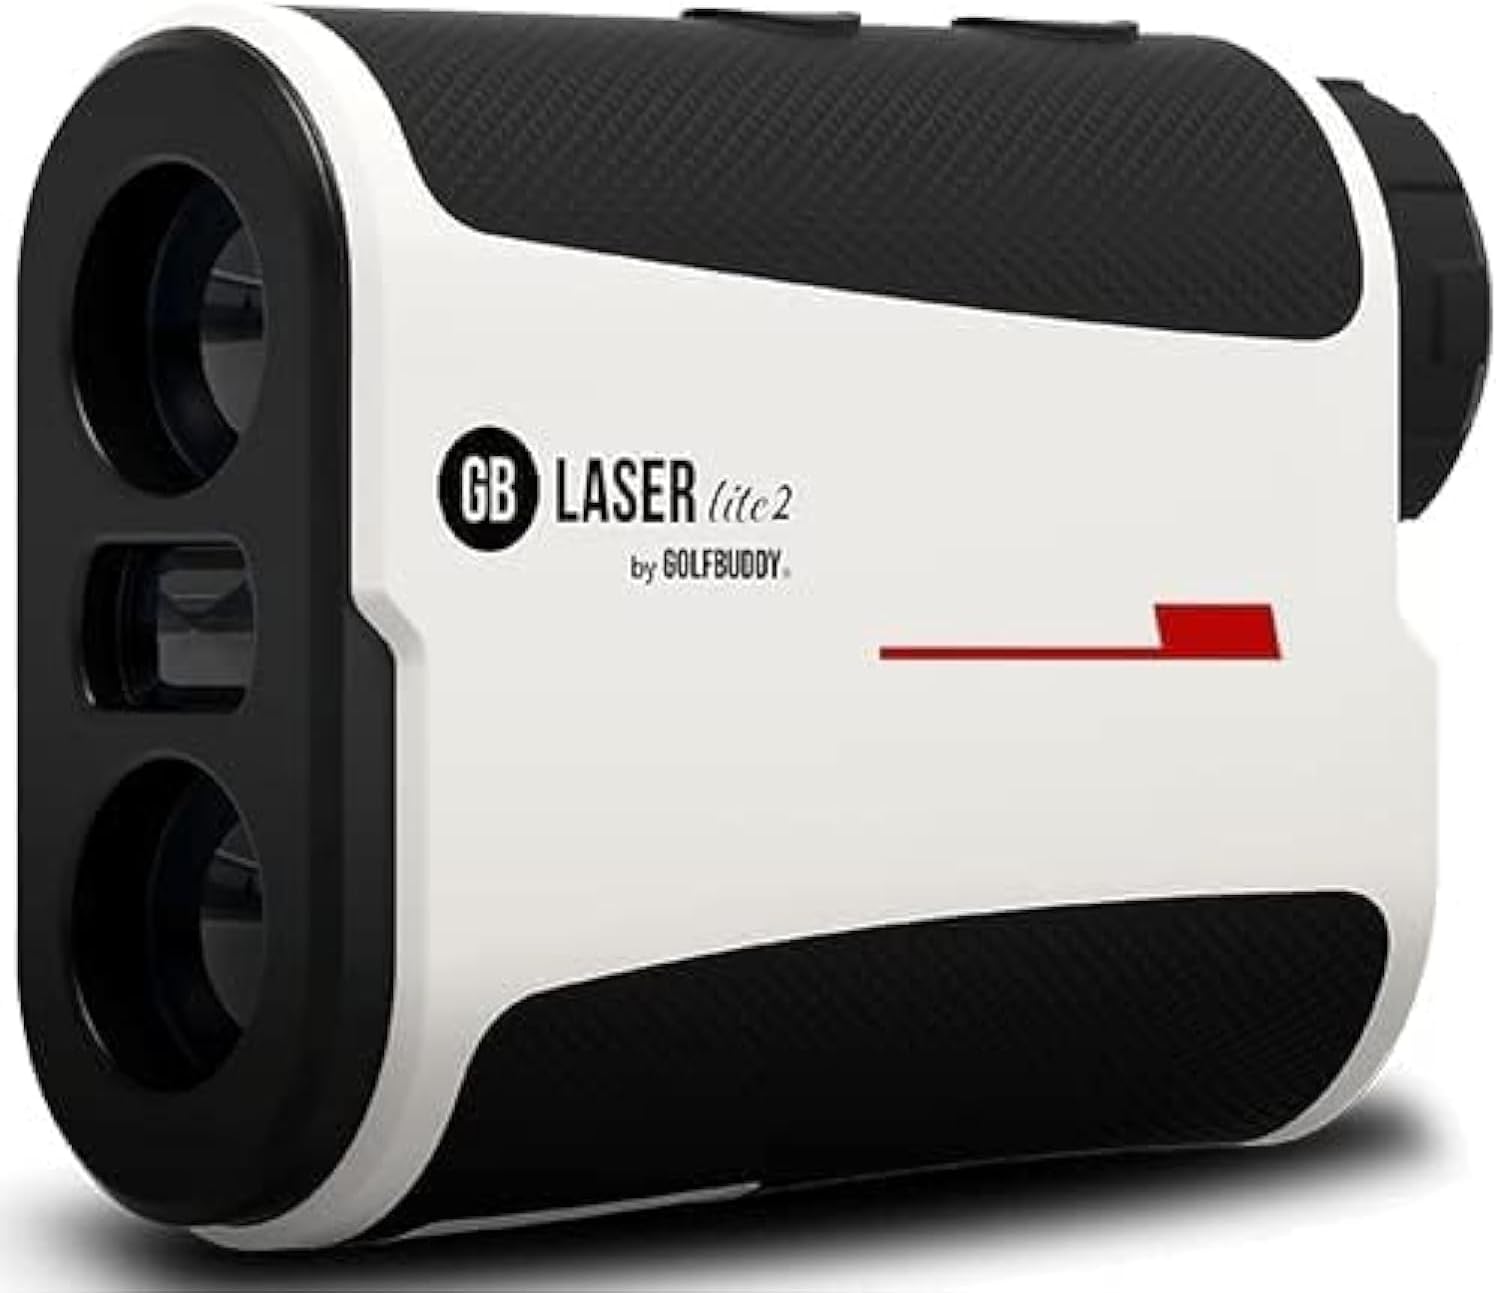 Golf Buddy Laser Lite 2 Rangefinder Review